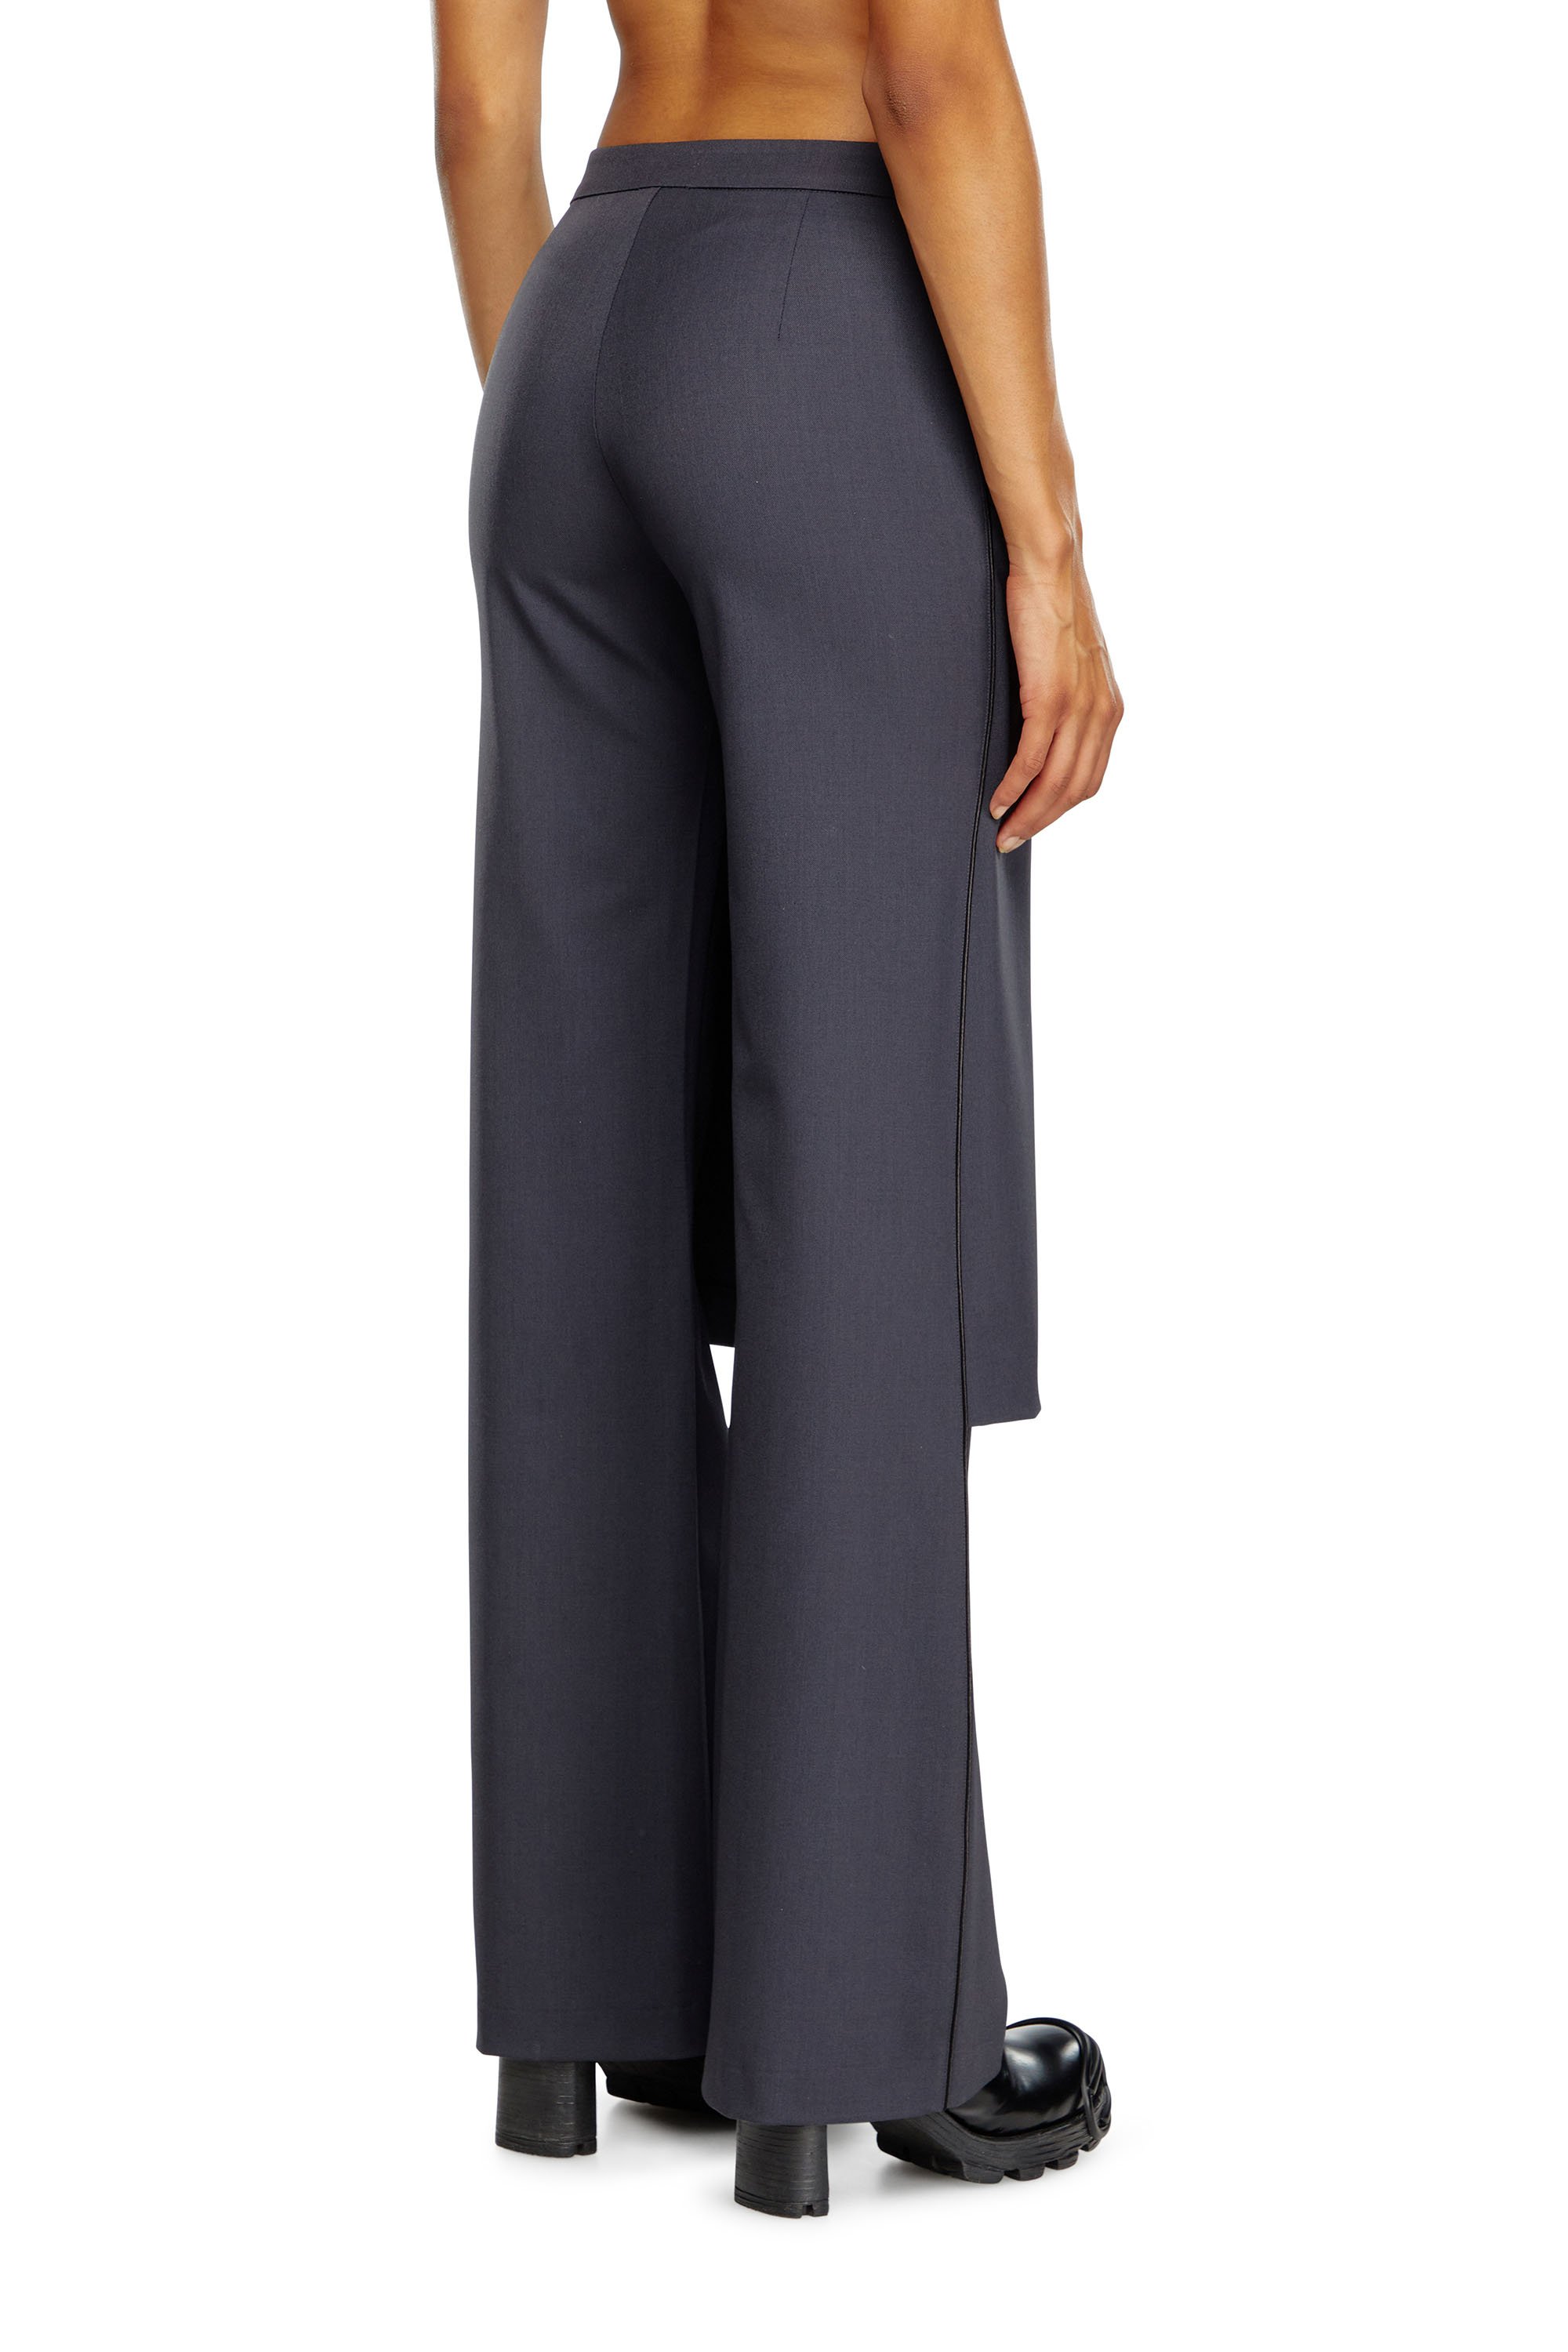 Diesel - P-EARL, Woman Hybrid skirt-pants in wool blend in Grey - Image 3